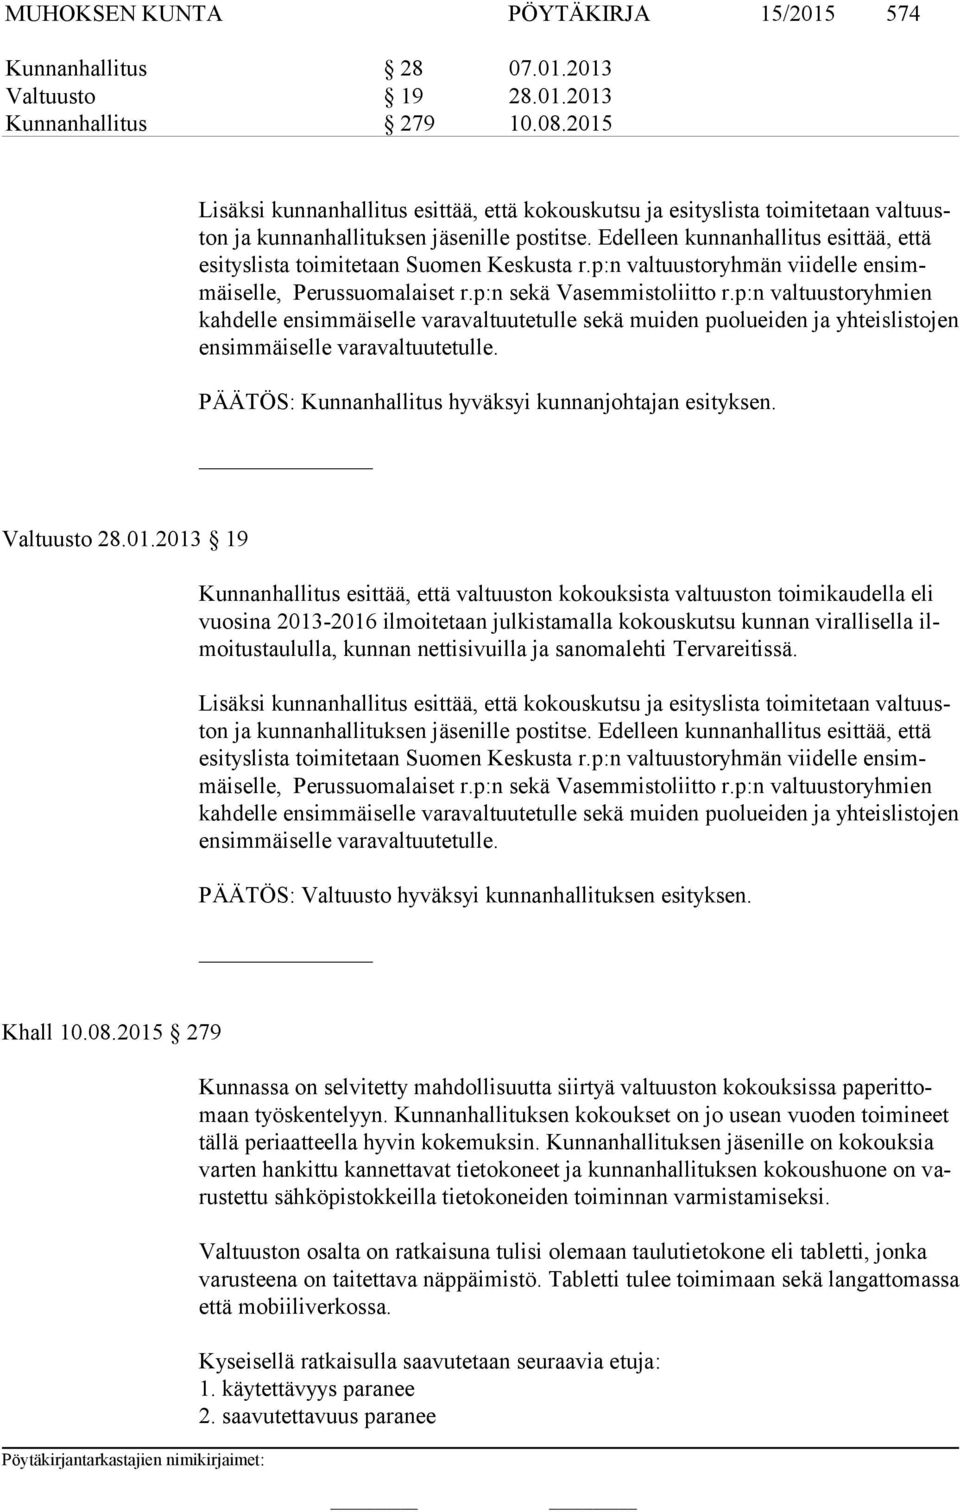 Edelleen kunnanhallitus esittää, että esi tys lis ta toimitetaan Suomen Keskusta r.p:n valtuustoryhmän viidelle ensimmäiselle, Perussuomalaiset r.p:n sekä Vasemmistoliitto r.